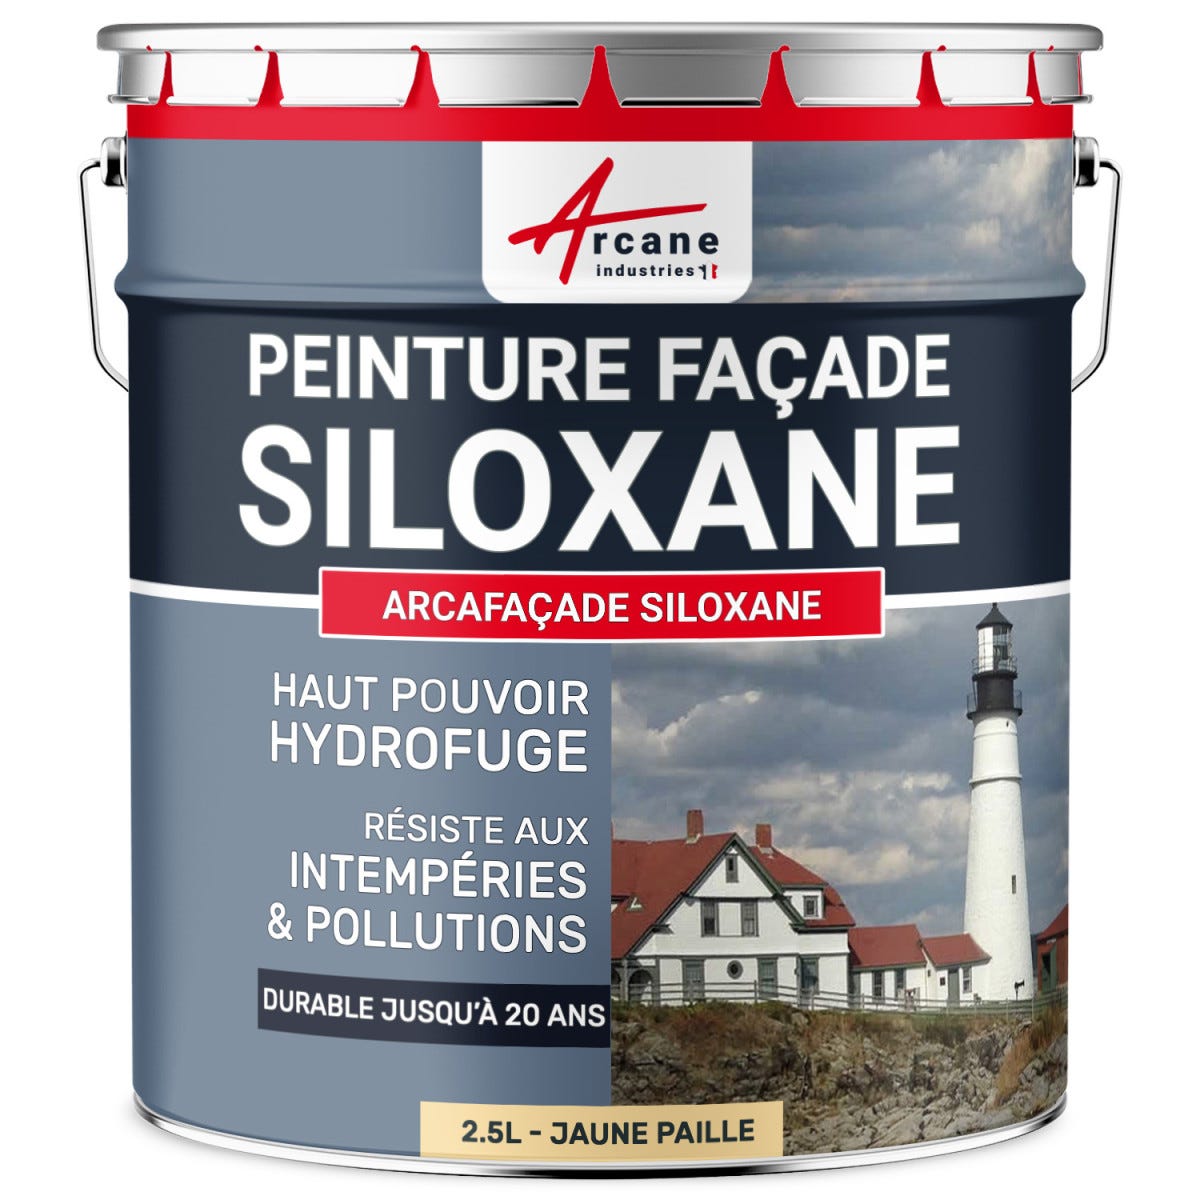 Peinture Facade Siloxane Hydrofuge - ARCAFACADE SILOXANE - 10 L (+ ou - 60 m² en 1 couche) - Beige - RAL 080 80 10 - ARCANE INDUSTRIES 4